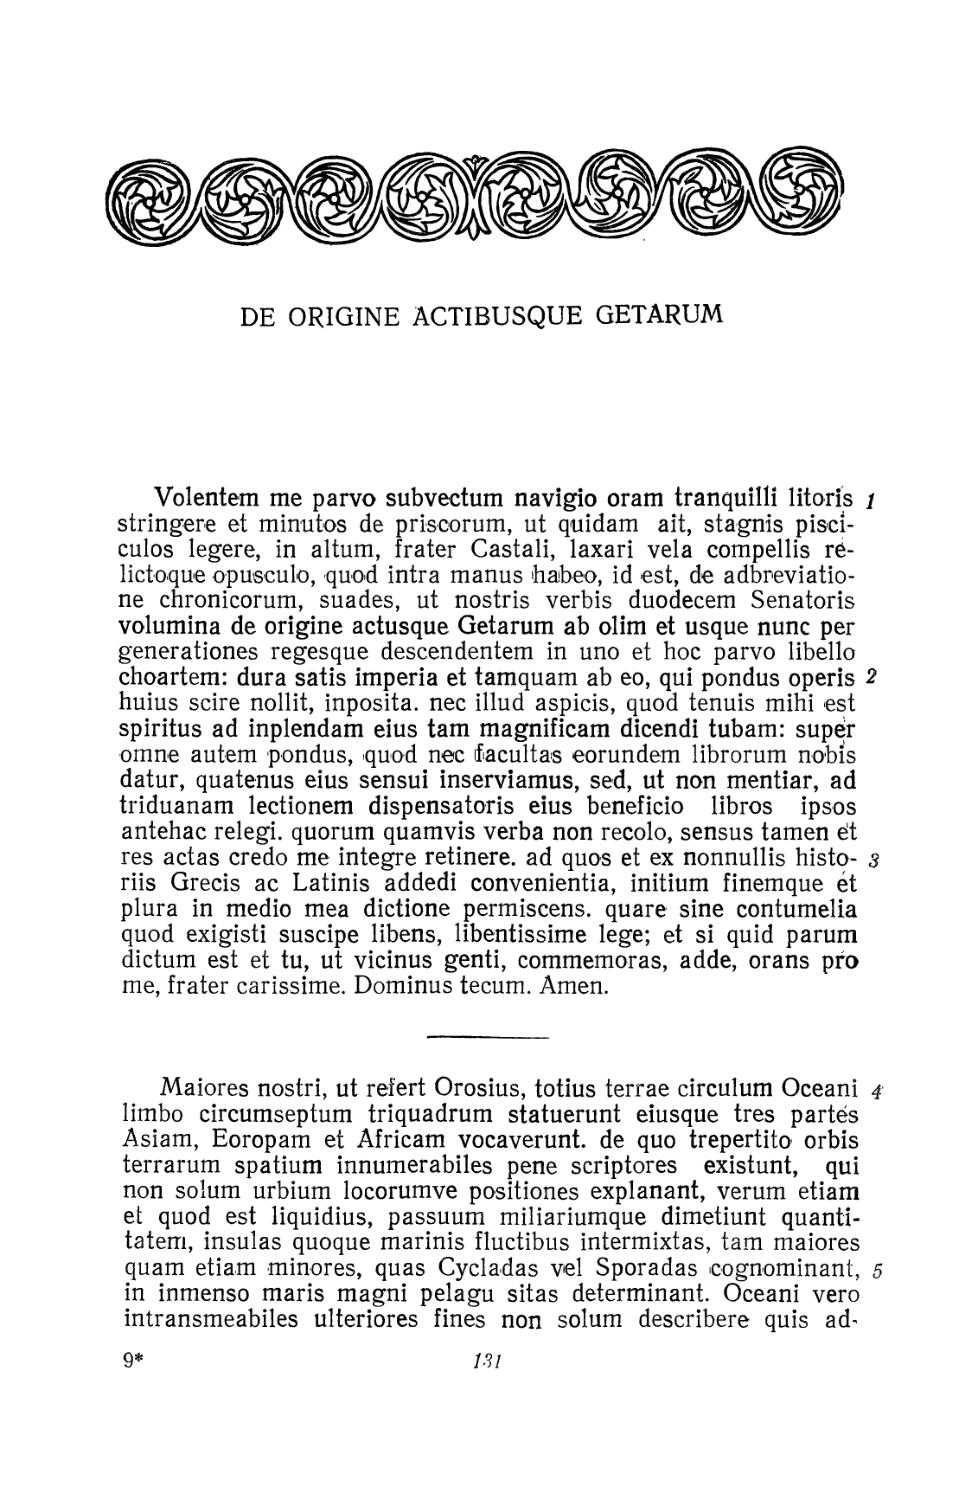 De origine actibusque Getarum